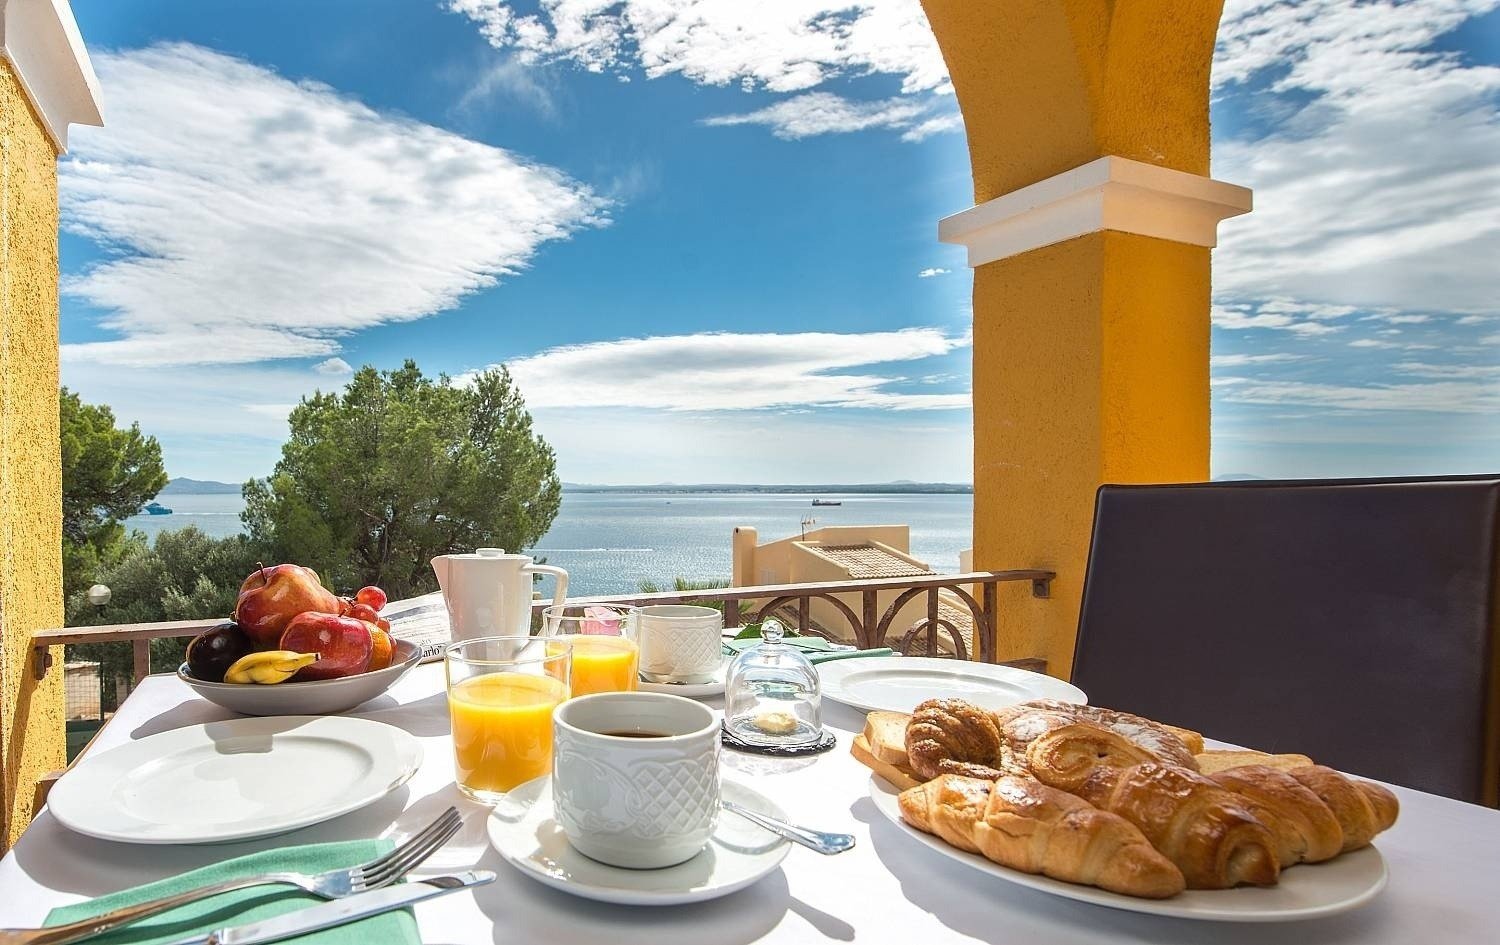 Desayuna en terraza en el hotel Ona Aucanada al Norte de Mallorca 